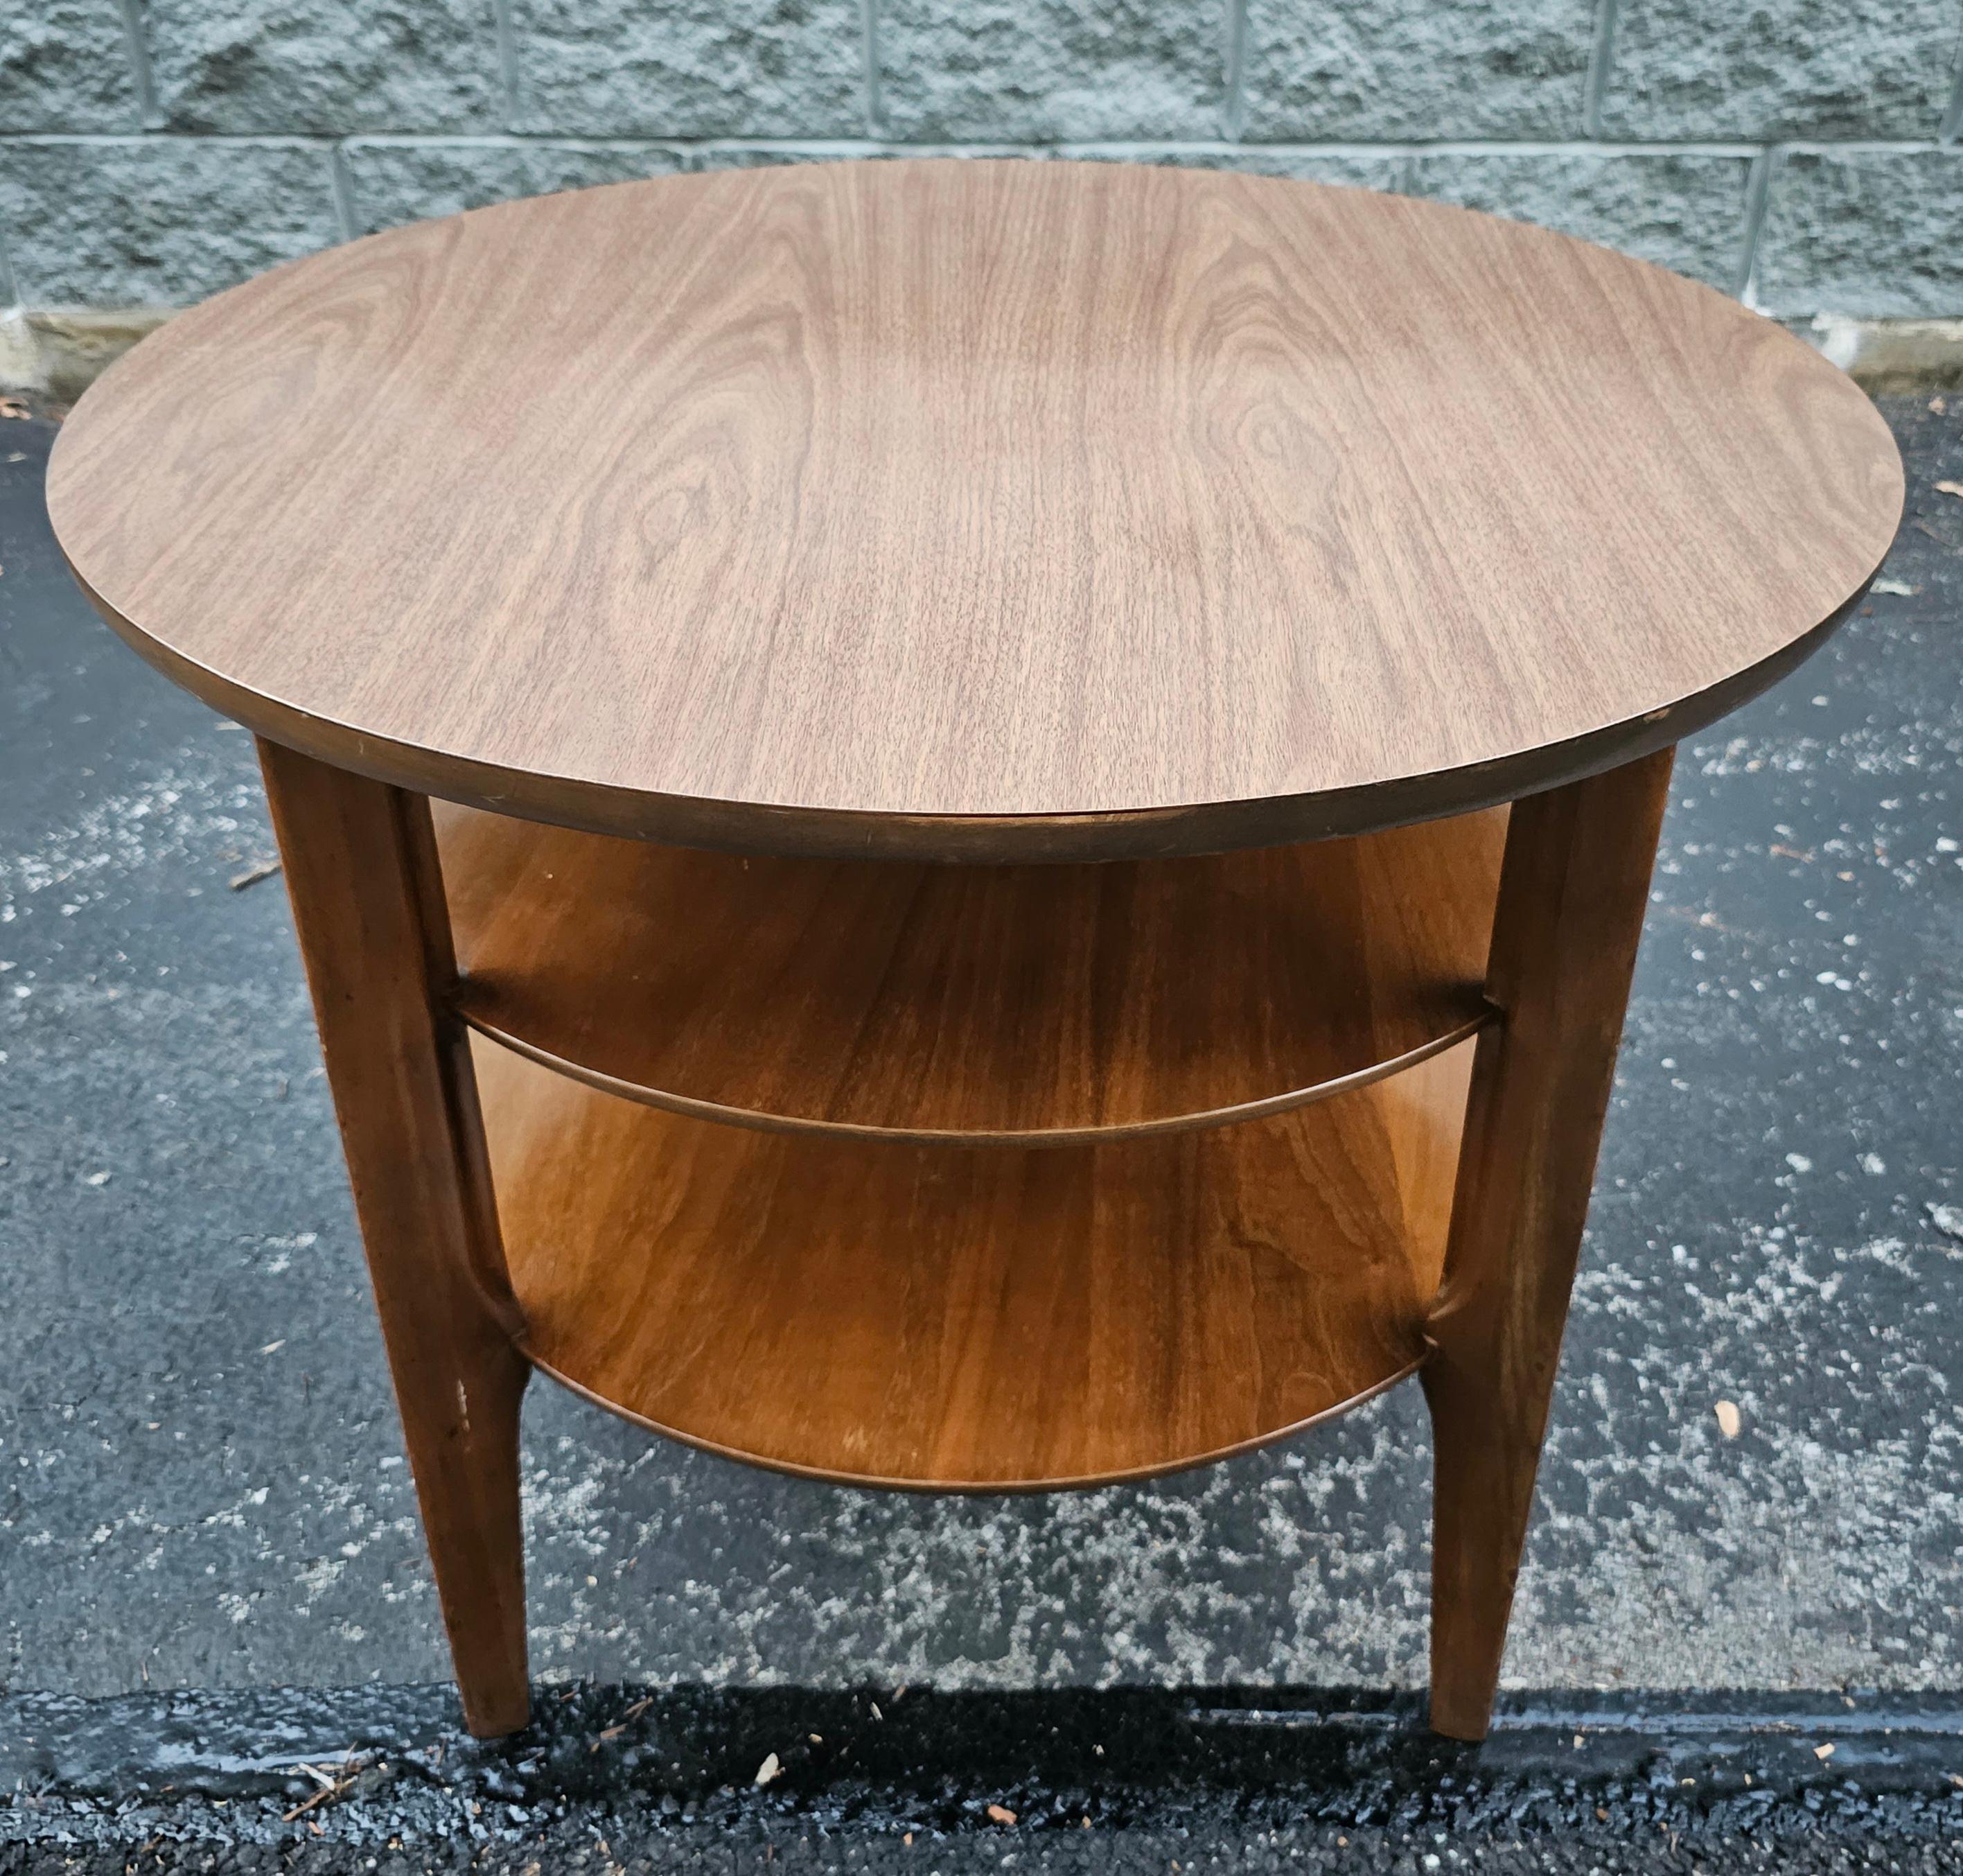 1960's Mersman Furniture three Tier Formica top and Teak table. Peut être utilisé comme table basse, table d'appoint ou table centrale. Rare plateau en formica en excellent état. Deux étagères avec un espace de 6